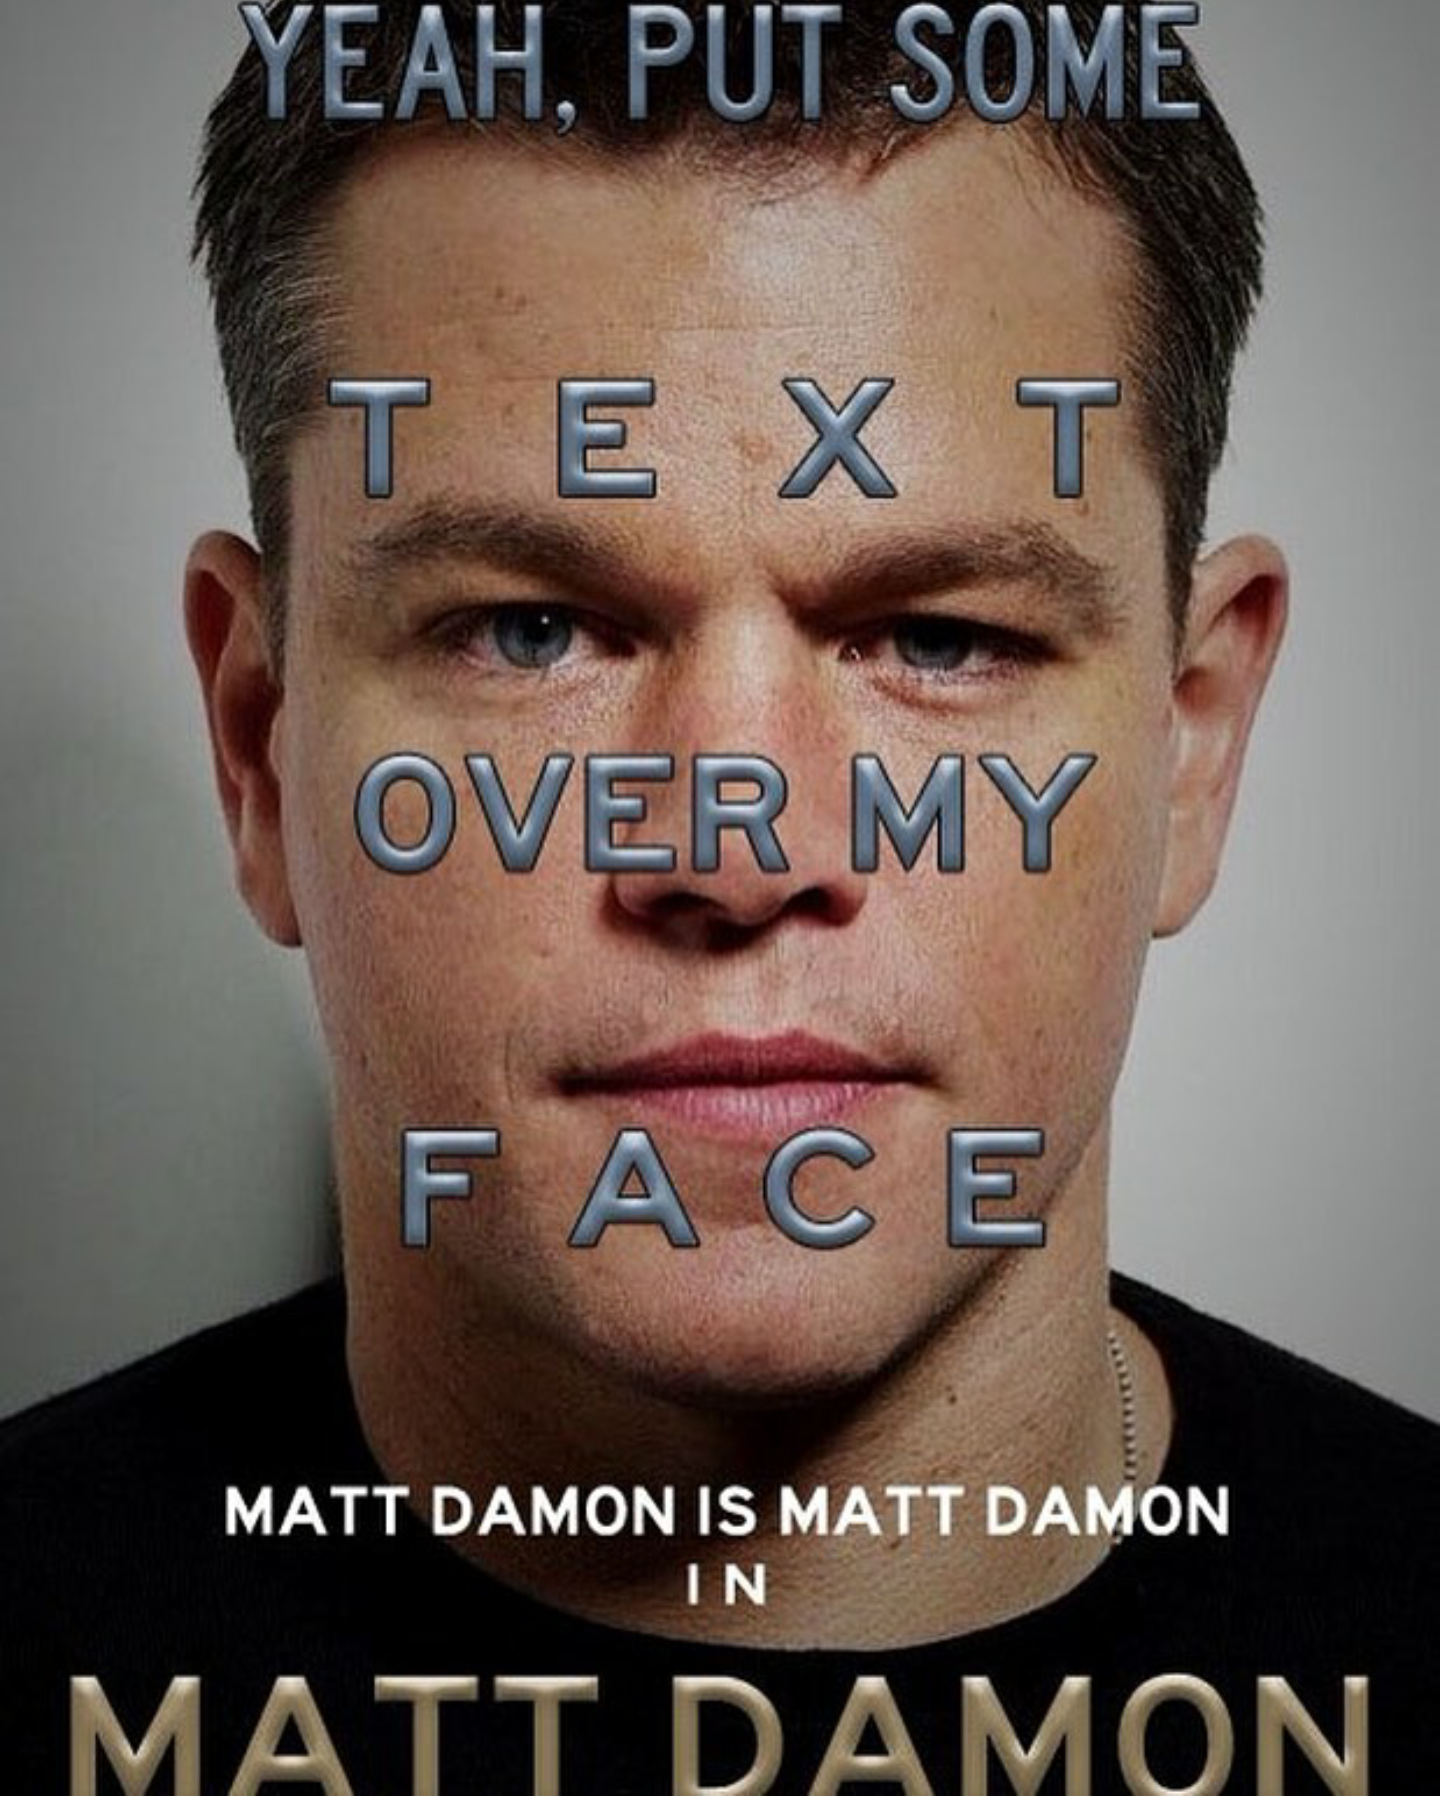 Featuring Matt Damon